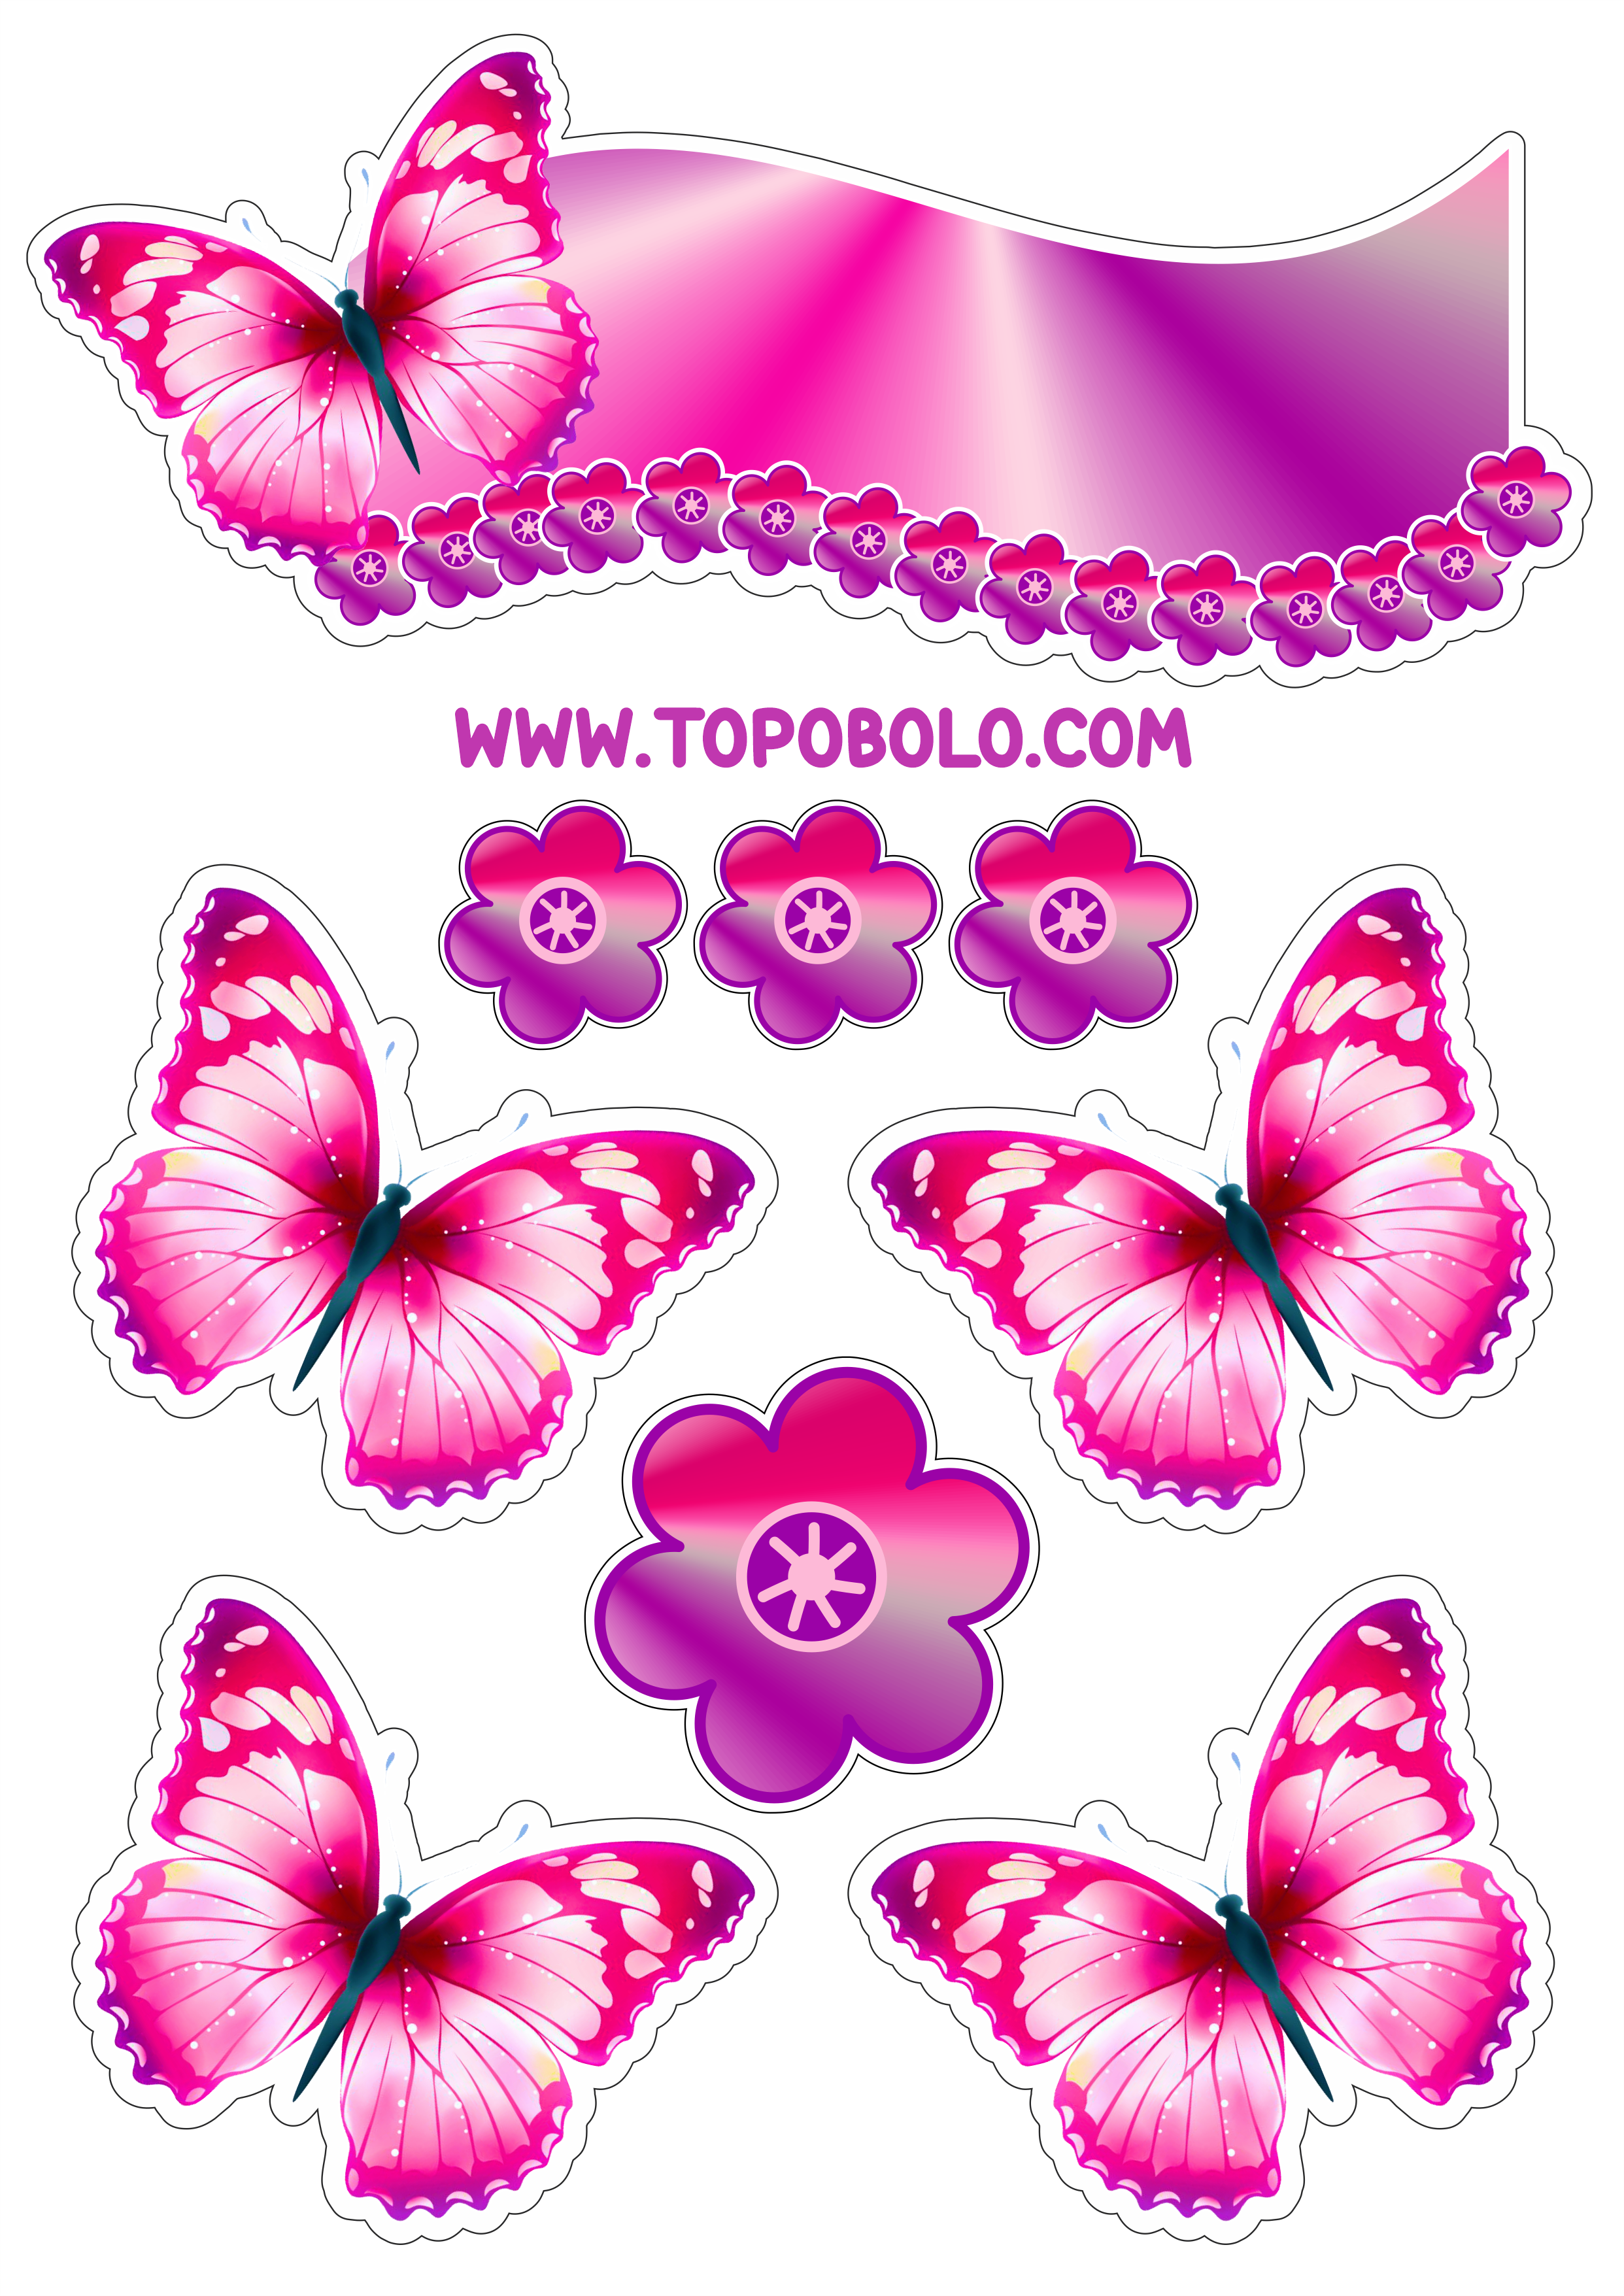 Topo de bolo para baixar borboletas coloridas decoração de aniversário png